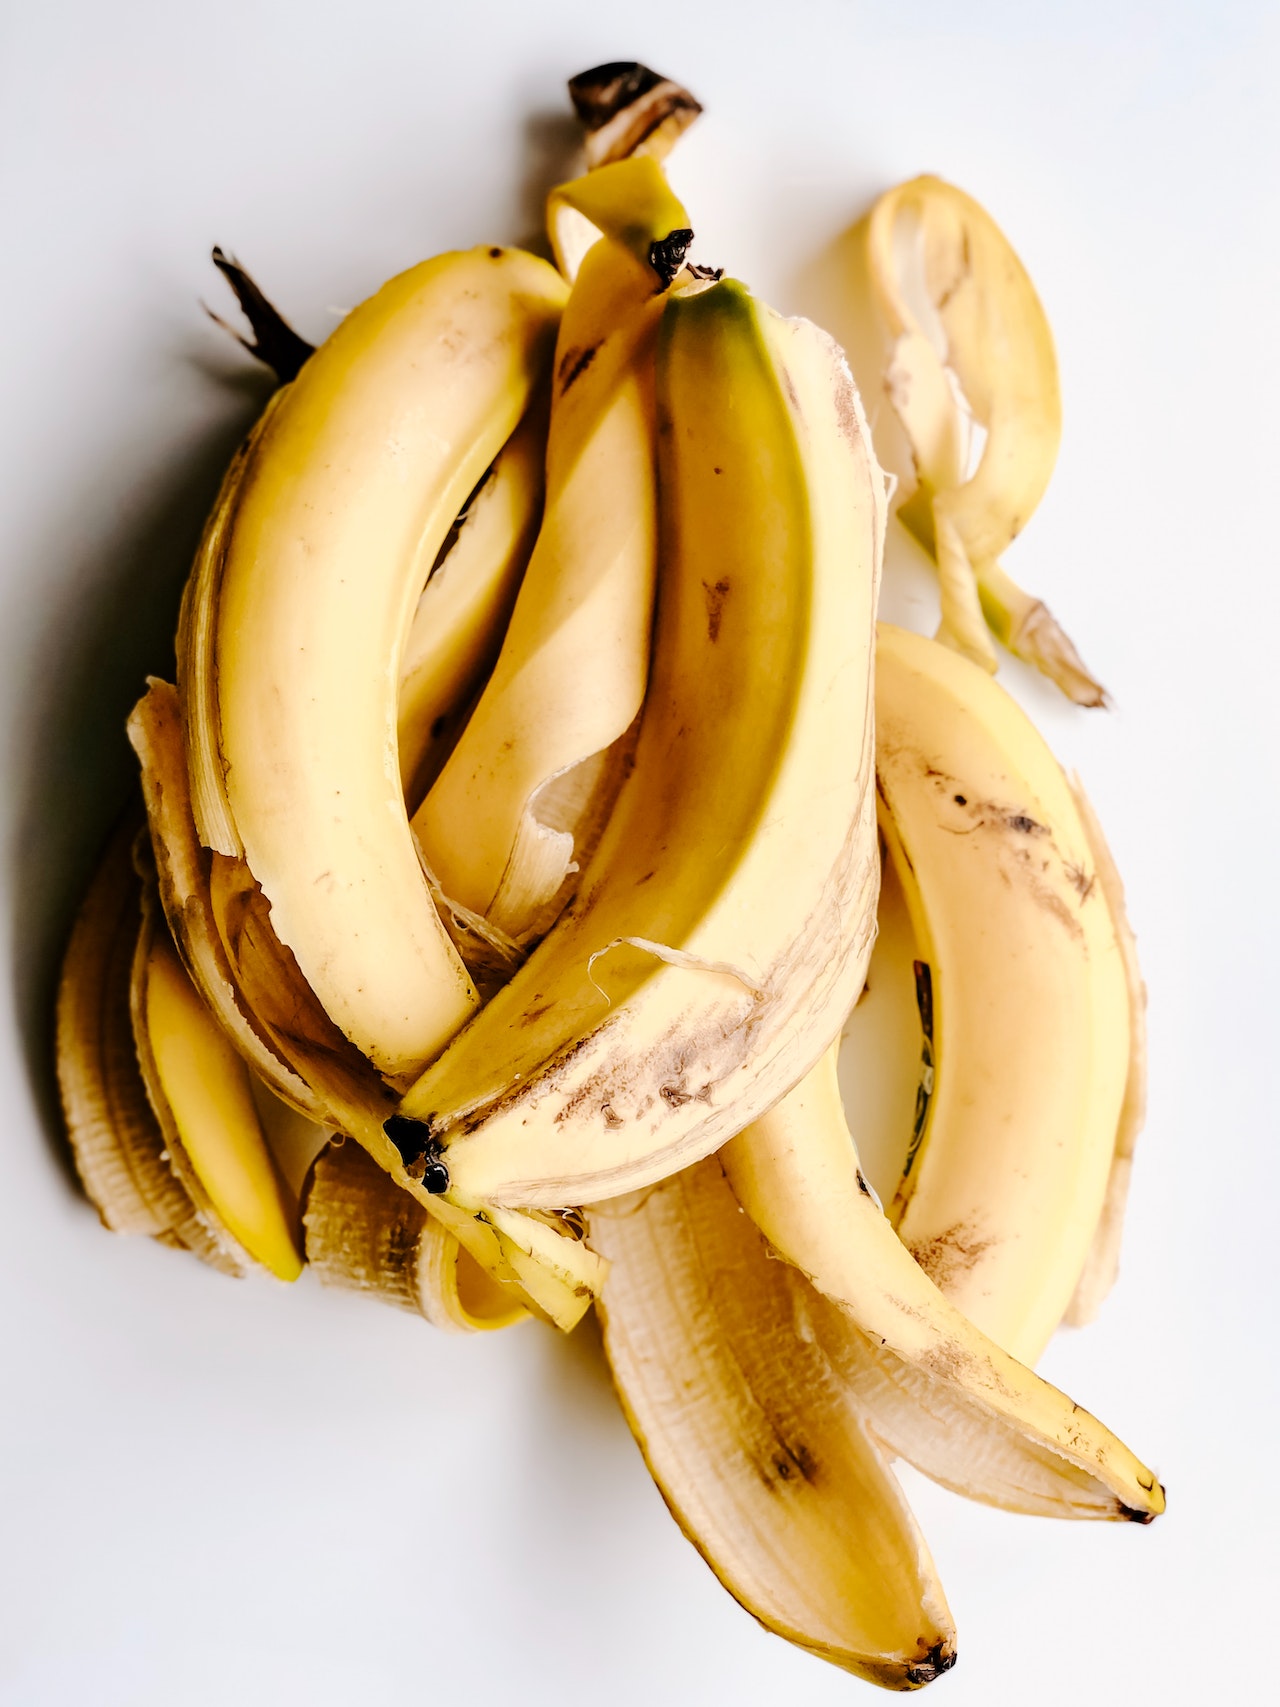 香蕉皮富含色胺酸，能幫助穩定情緒，被生技業者開發為面膜（攝影／Julia Kuzenkov；圖片來源／pexels）